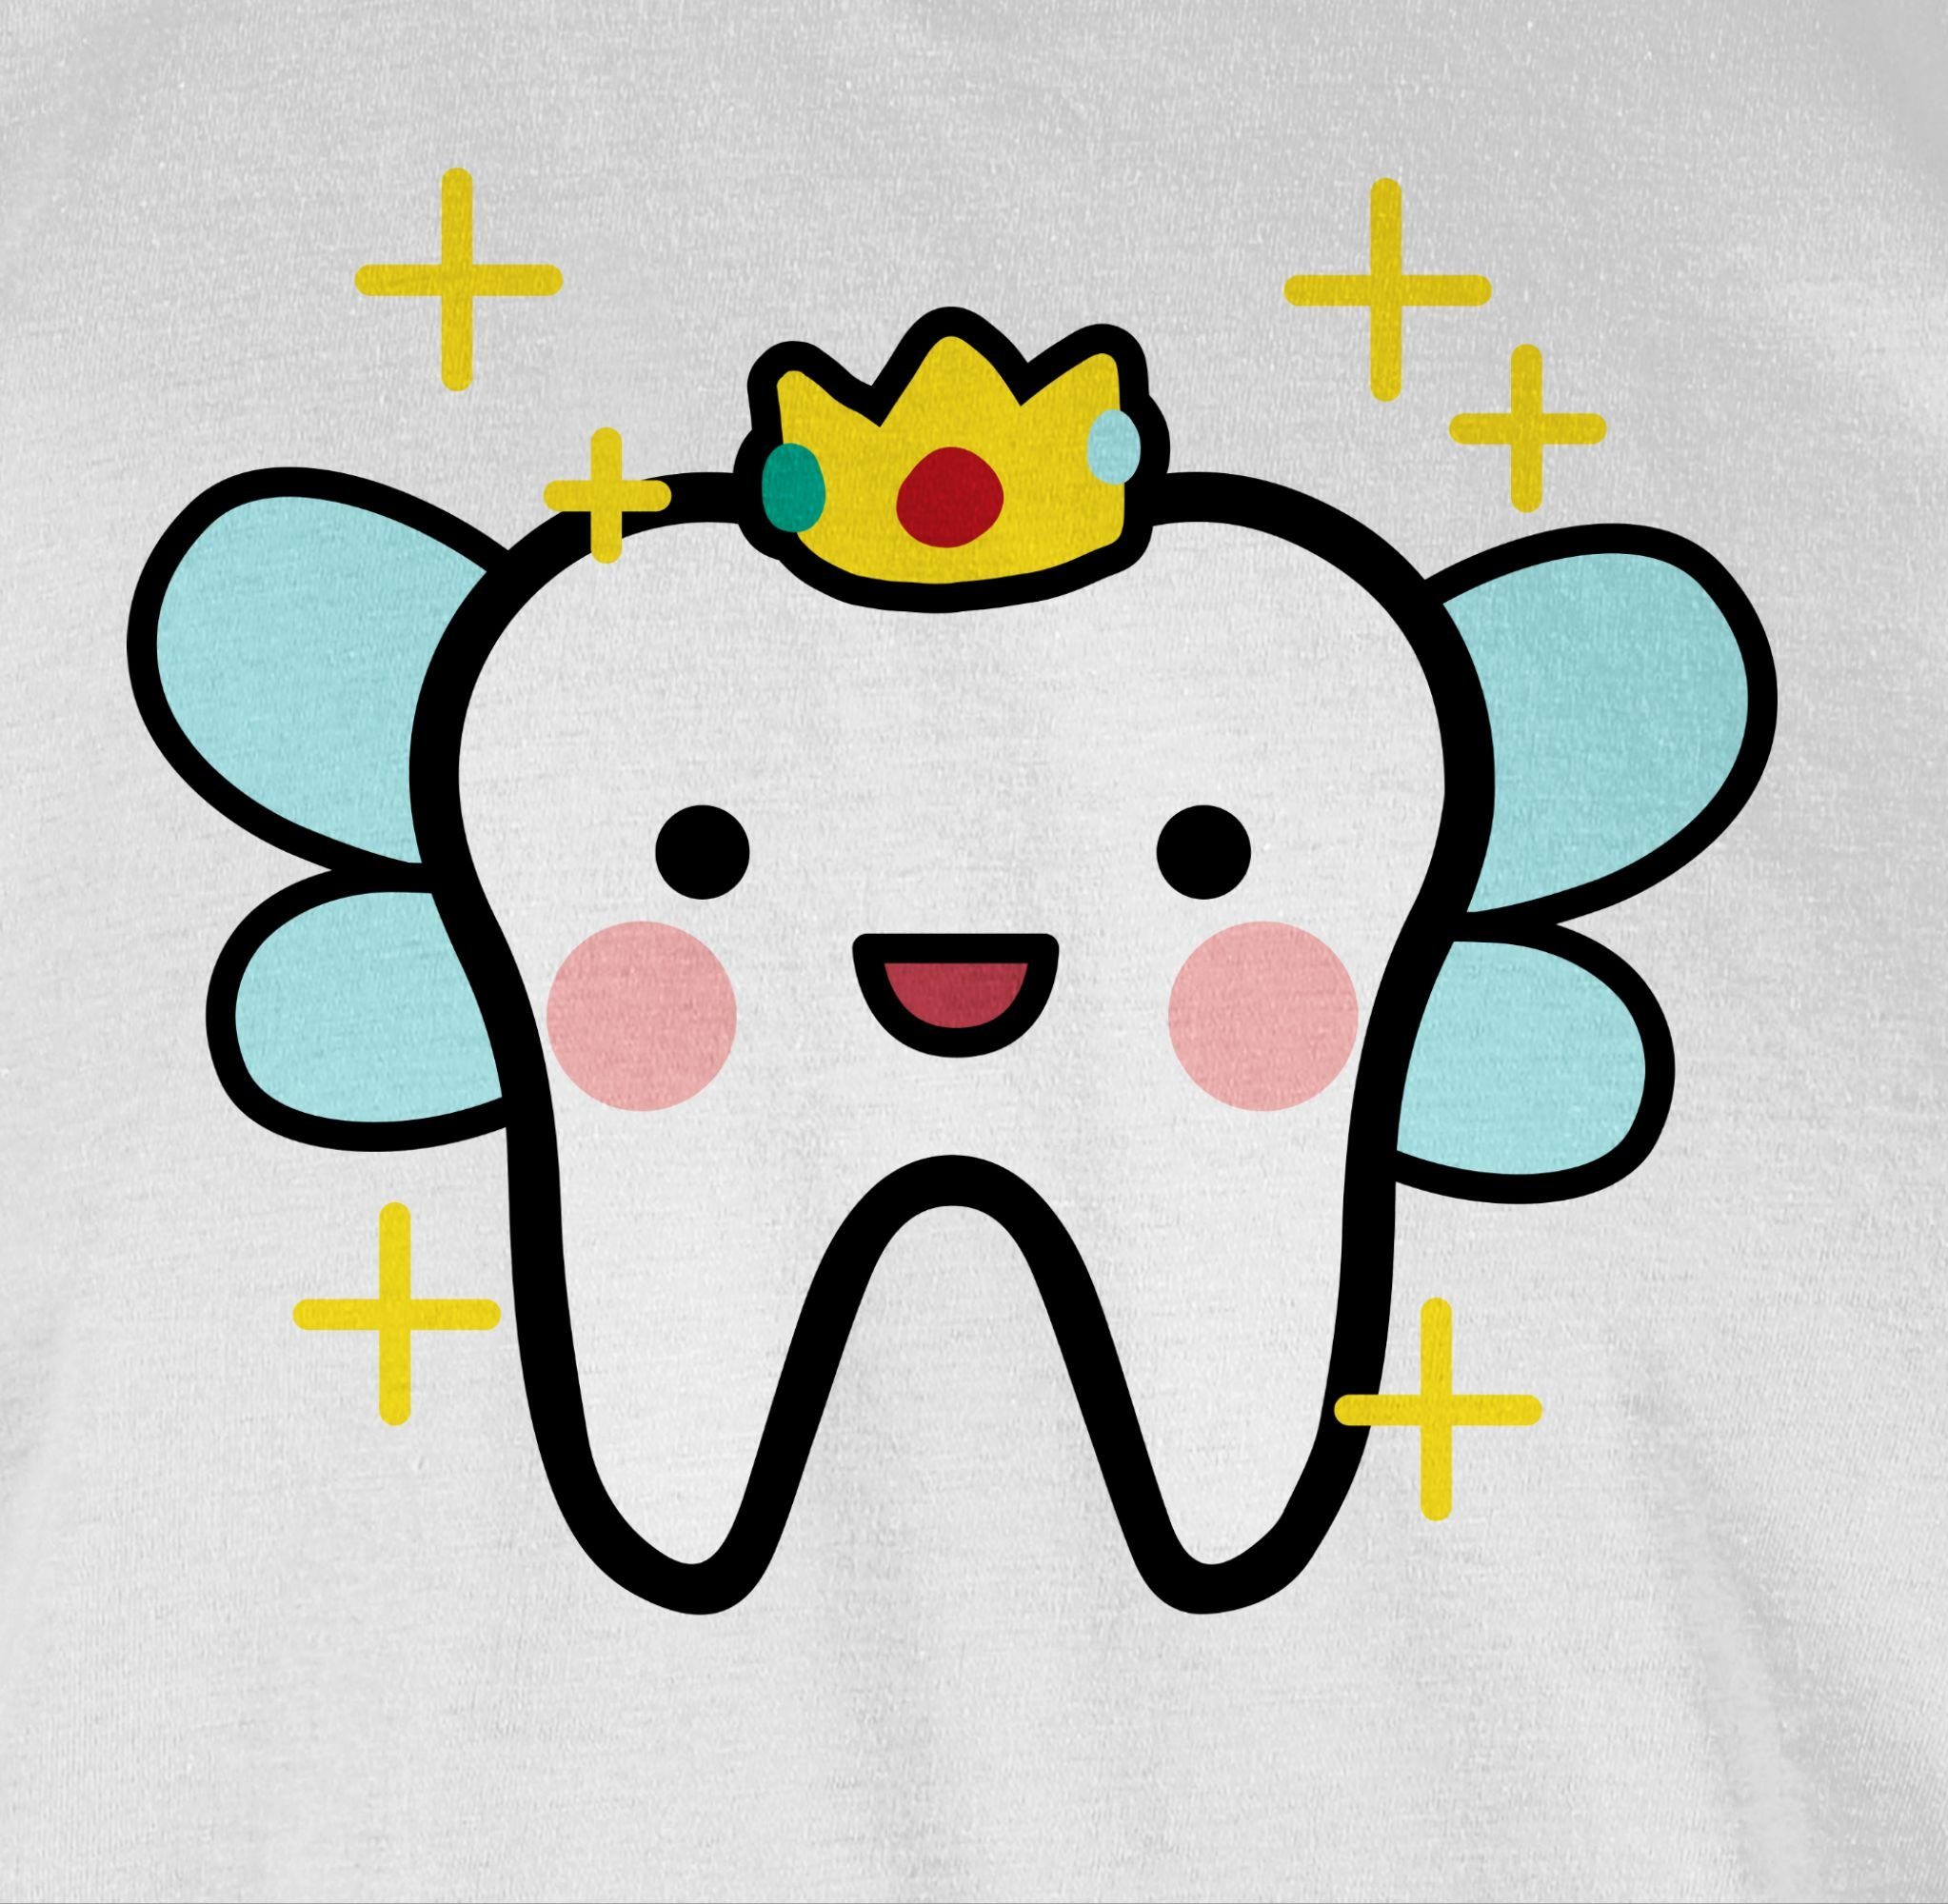 Zahnfee Geschenk - Zahnarzt Karneval Zahn-Fee Zahnme Krone 1 mit Outfit T-Shirt Shirtracer Weiß Zahnarzthelferin